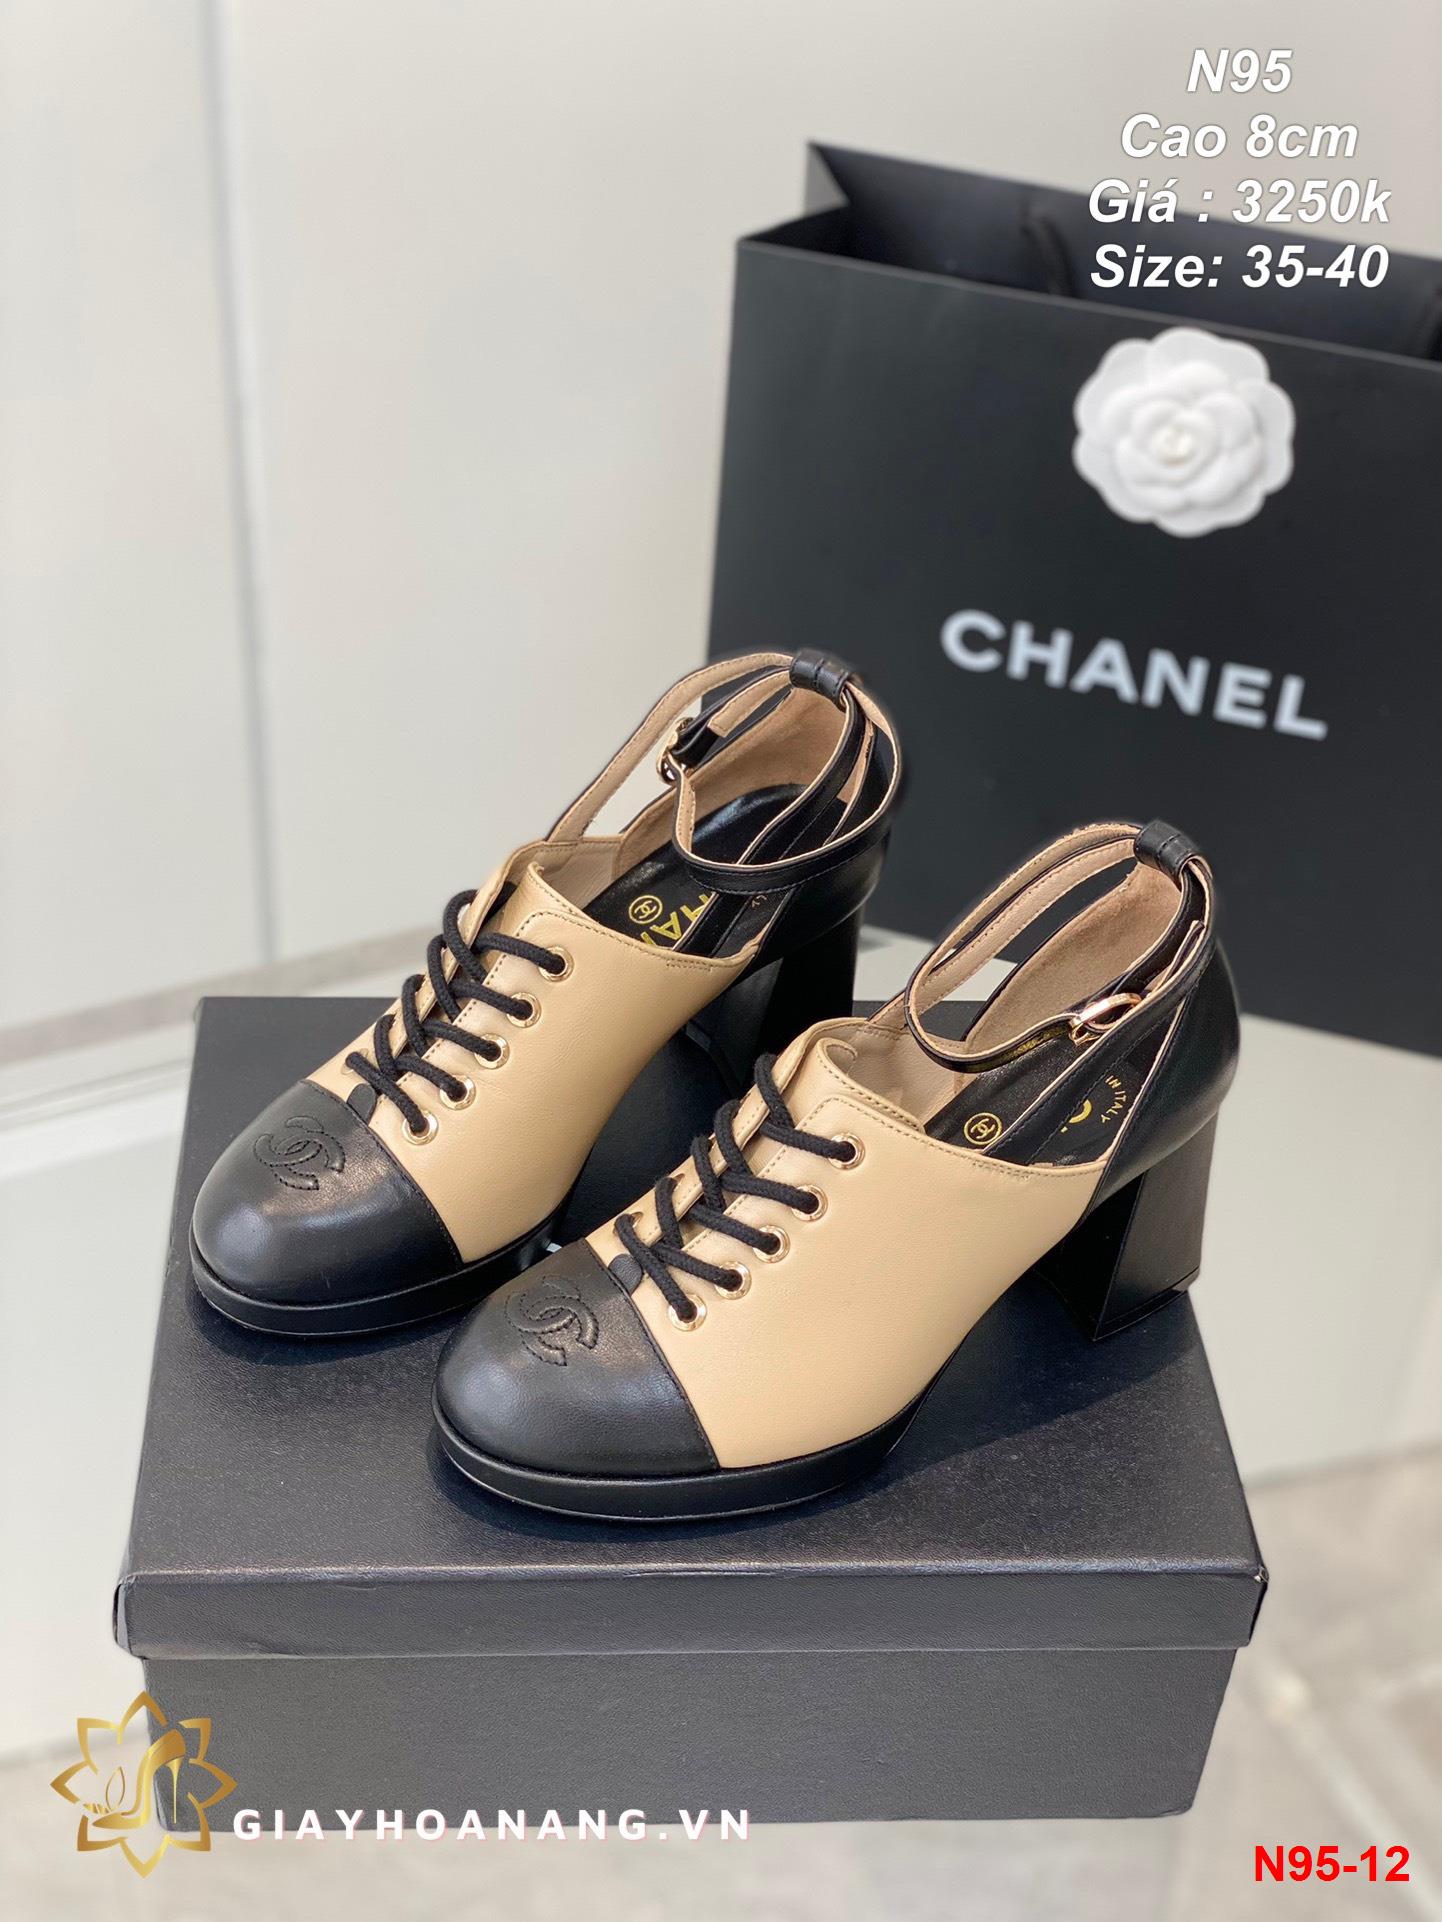 N95-12 Chanel giày cao 8cm siêu cấp